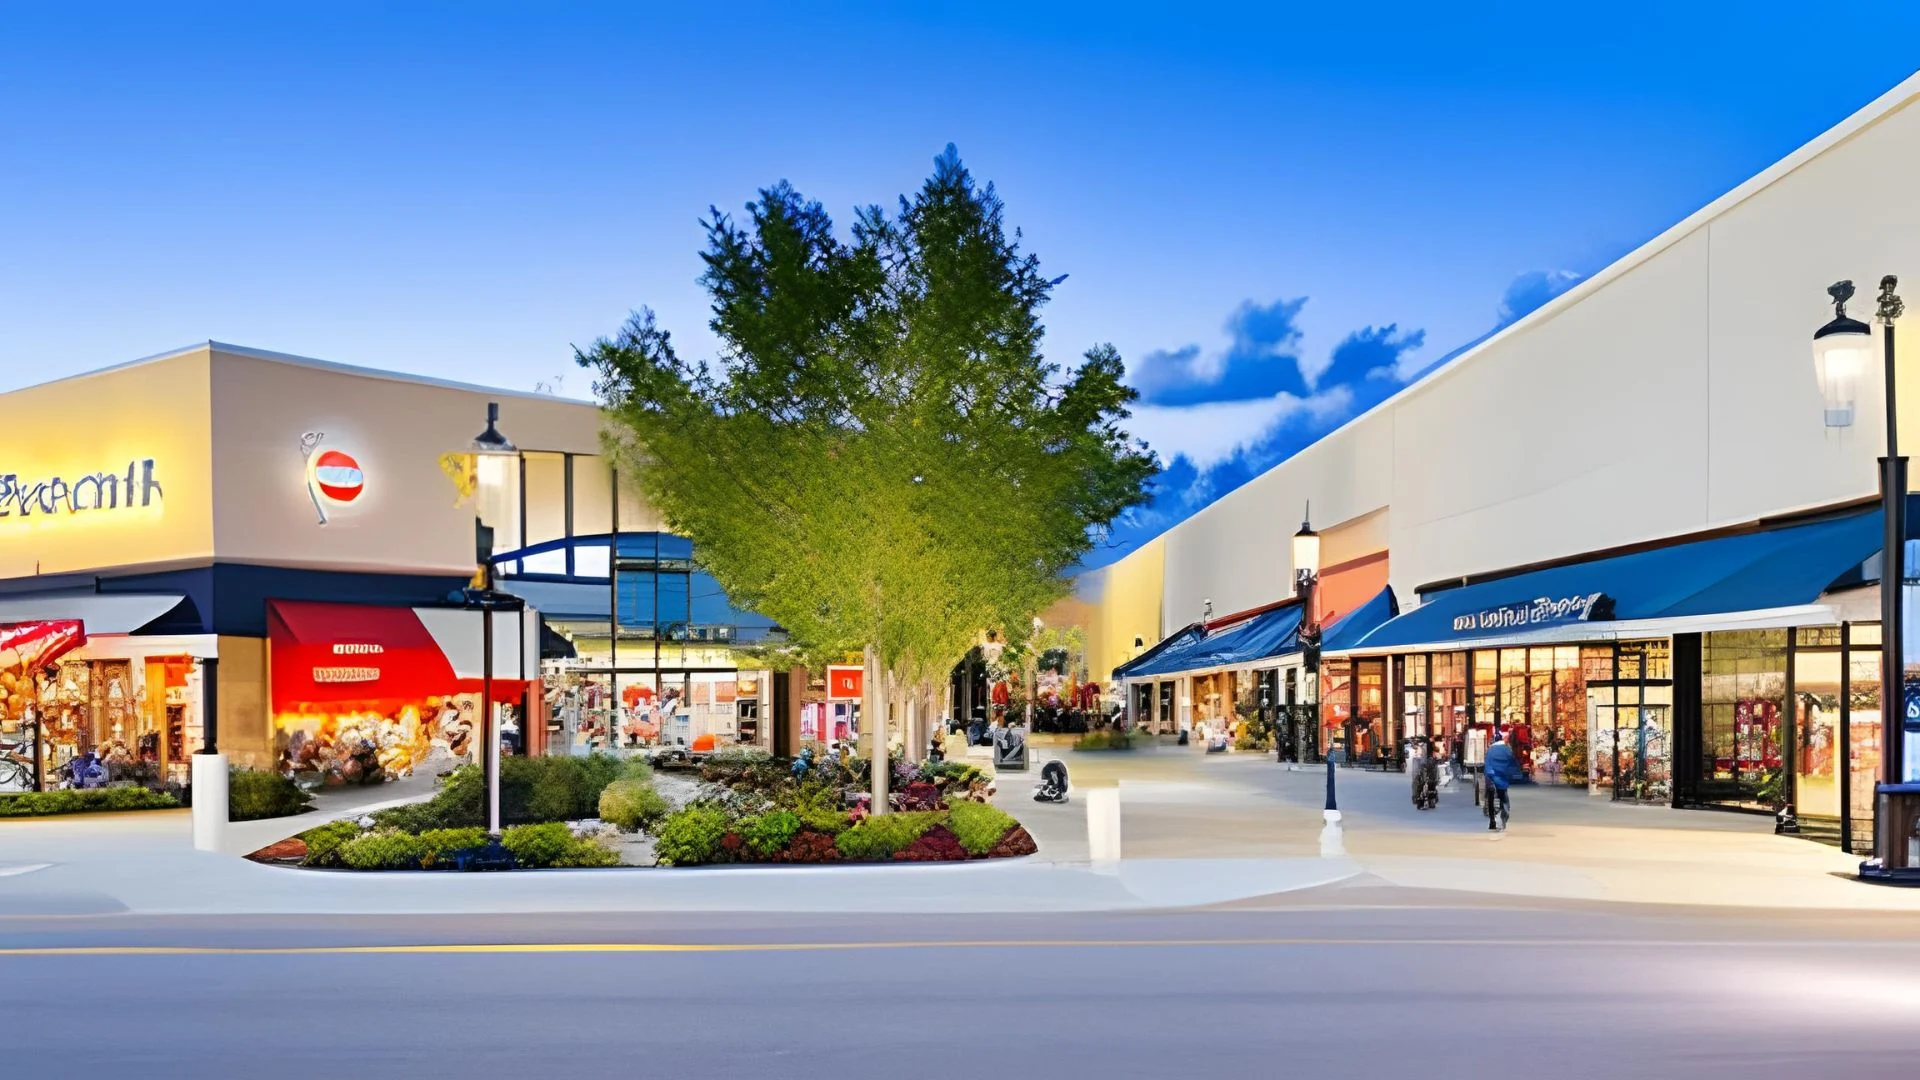 Menghidupkan Lagi Pusat Perbelanjaan di Daerah: Menuju Revolusi Perbelanjaaan yang Lebih Kekinian